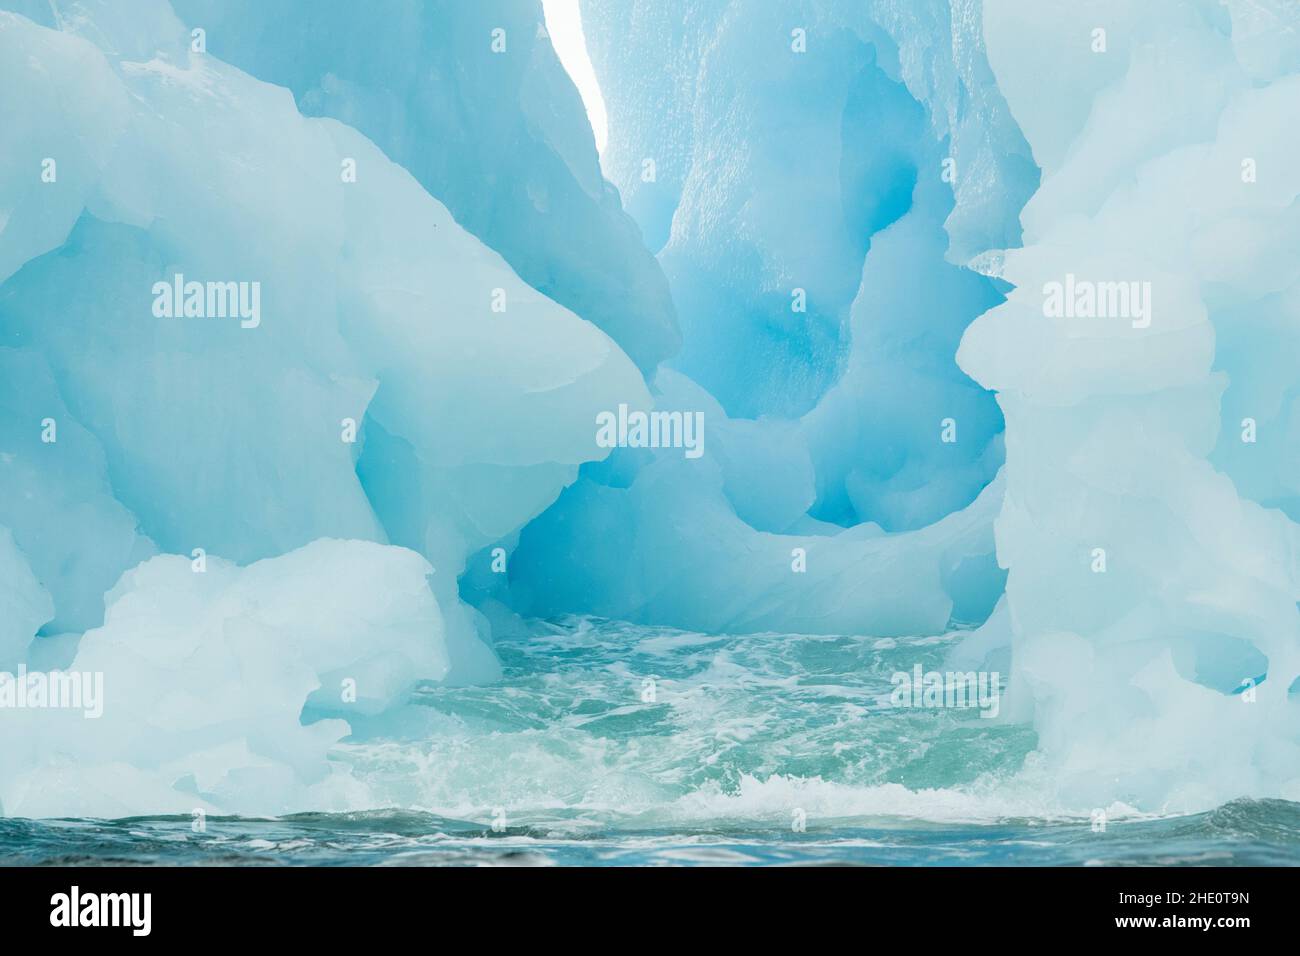 Meerwasser erodiert einen Kanal in einem blauen Eisberg. Stockfoto